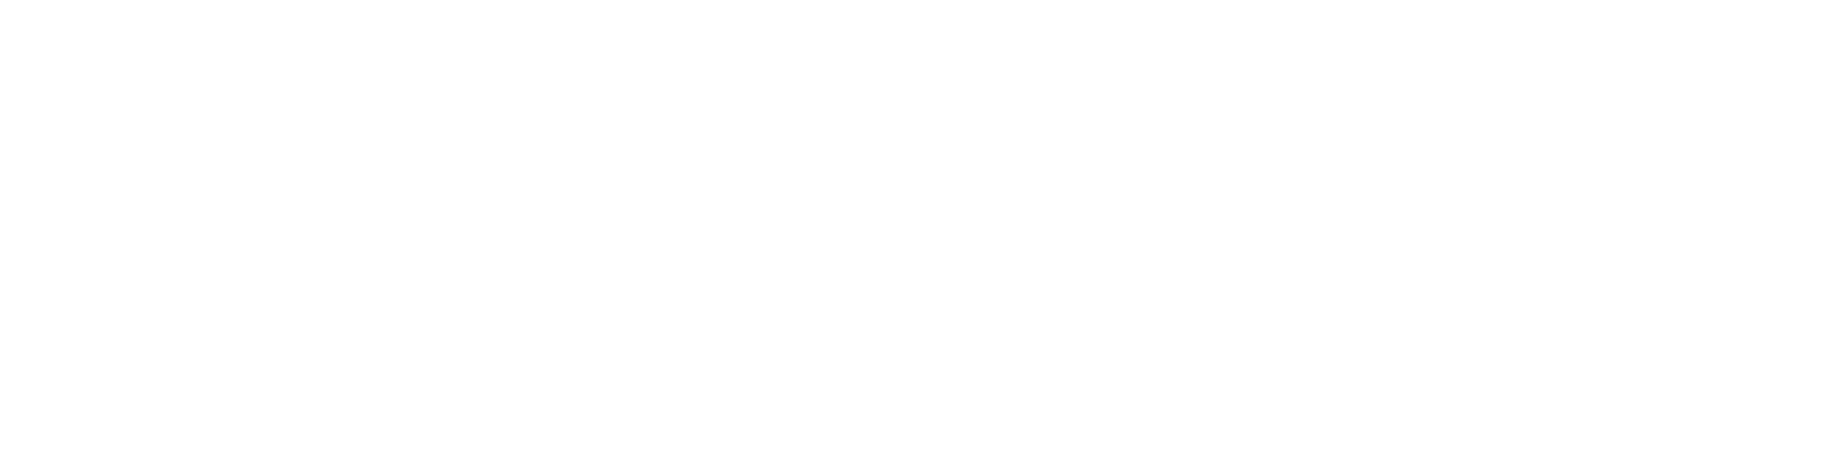 2nd_Tac_For_Logo